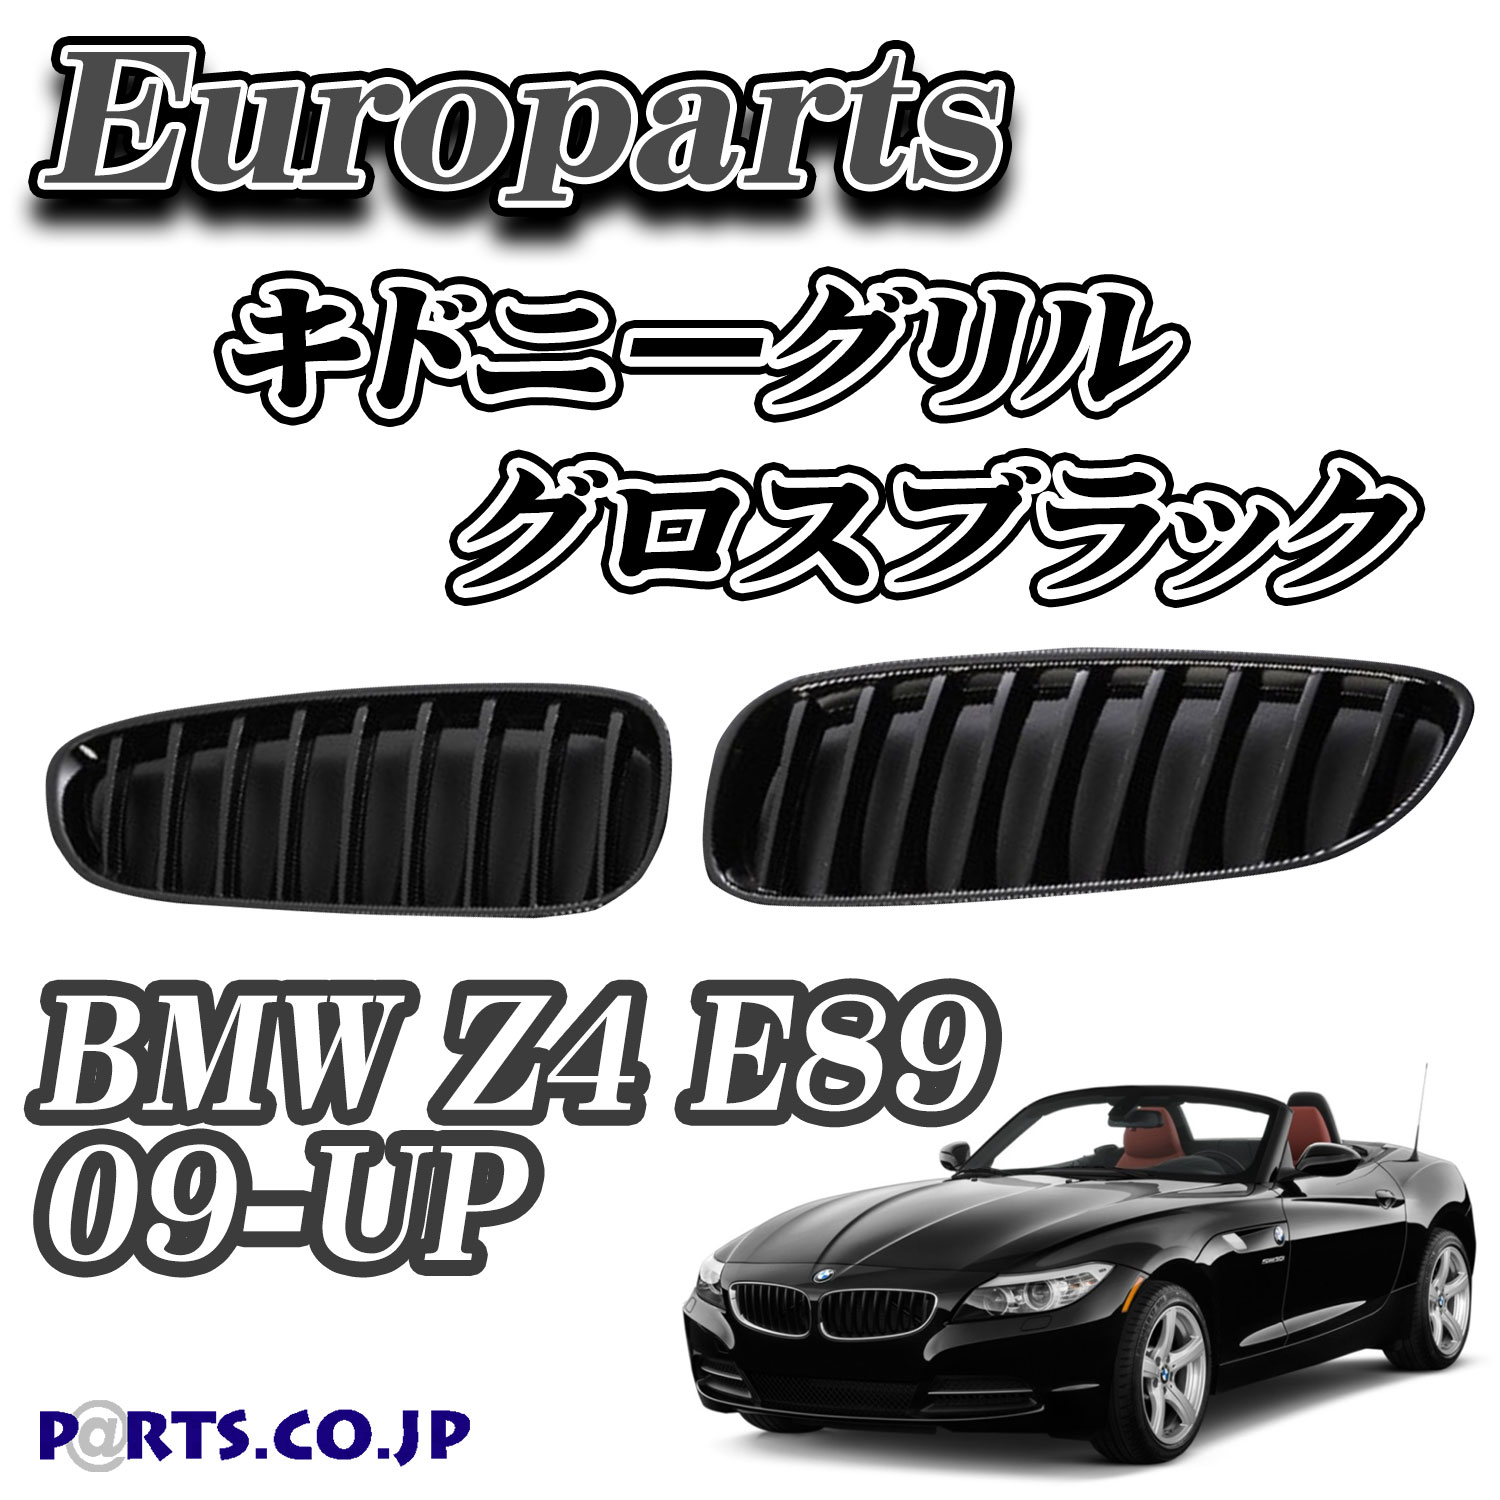 Europarts 初回限定 ユーロパーツ BMW Z4 E89 買取 09-UP グロスブラック グリル キドニーグリル